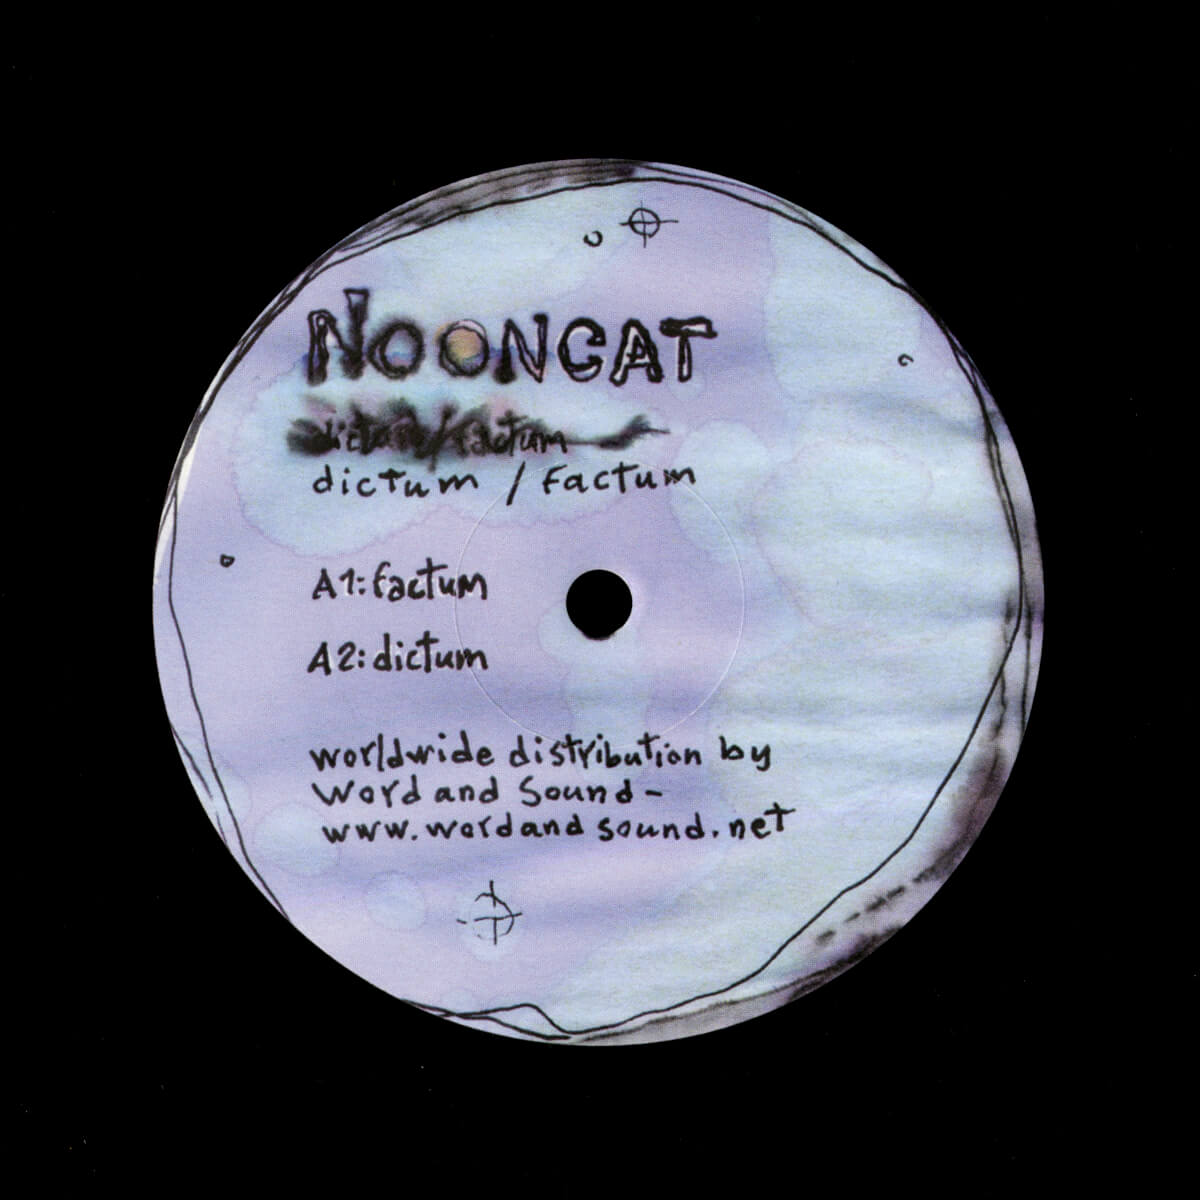 Nooncat – Dictum / Factum